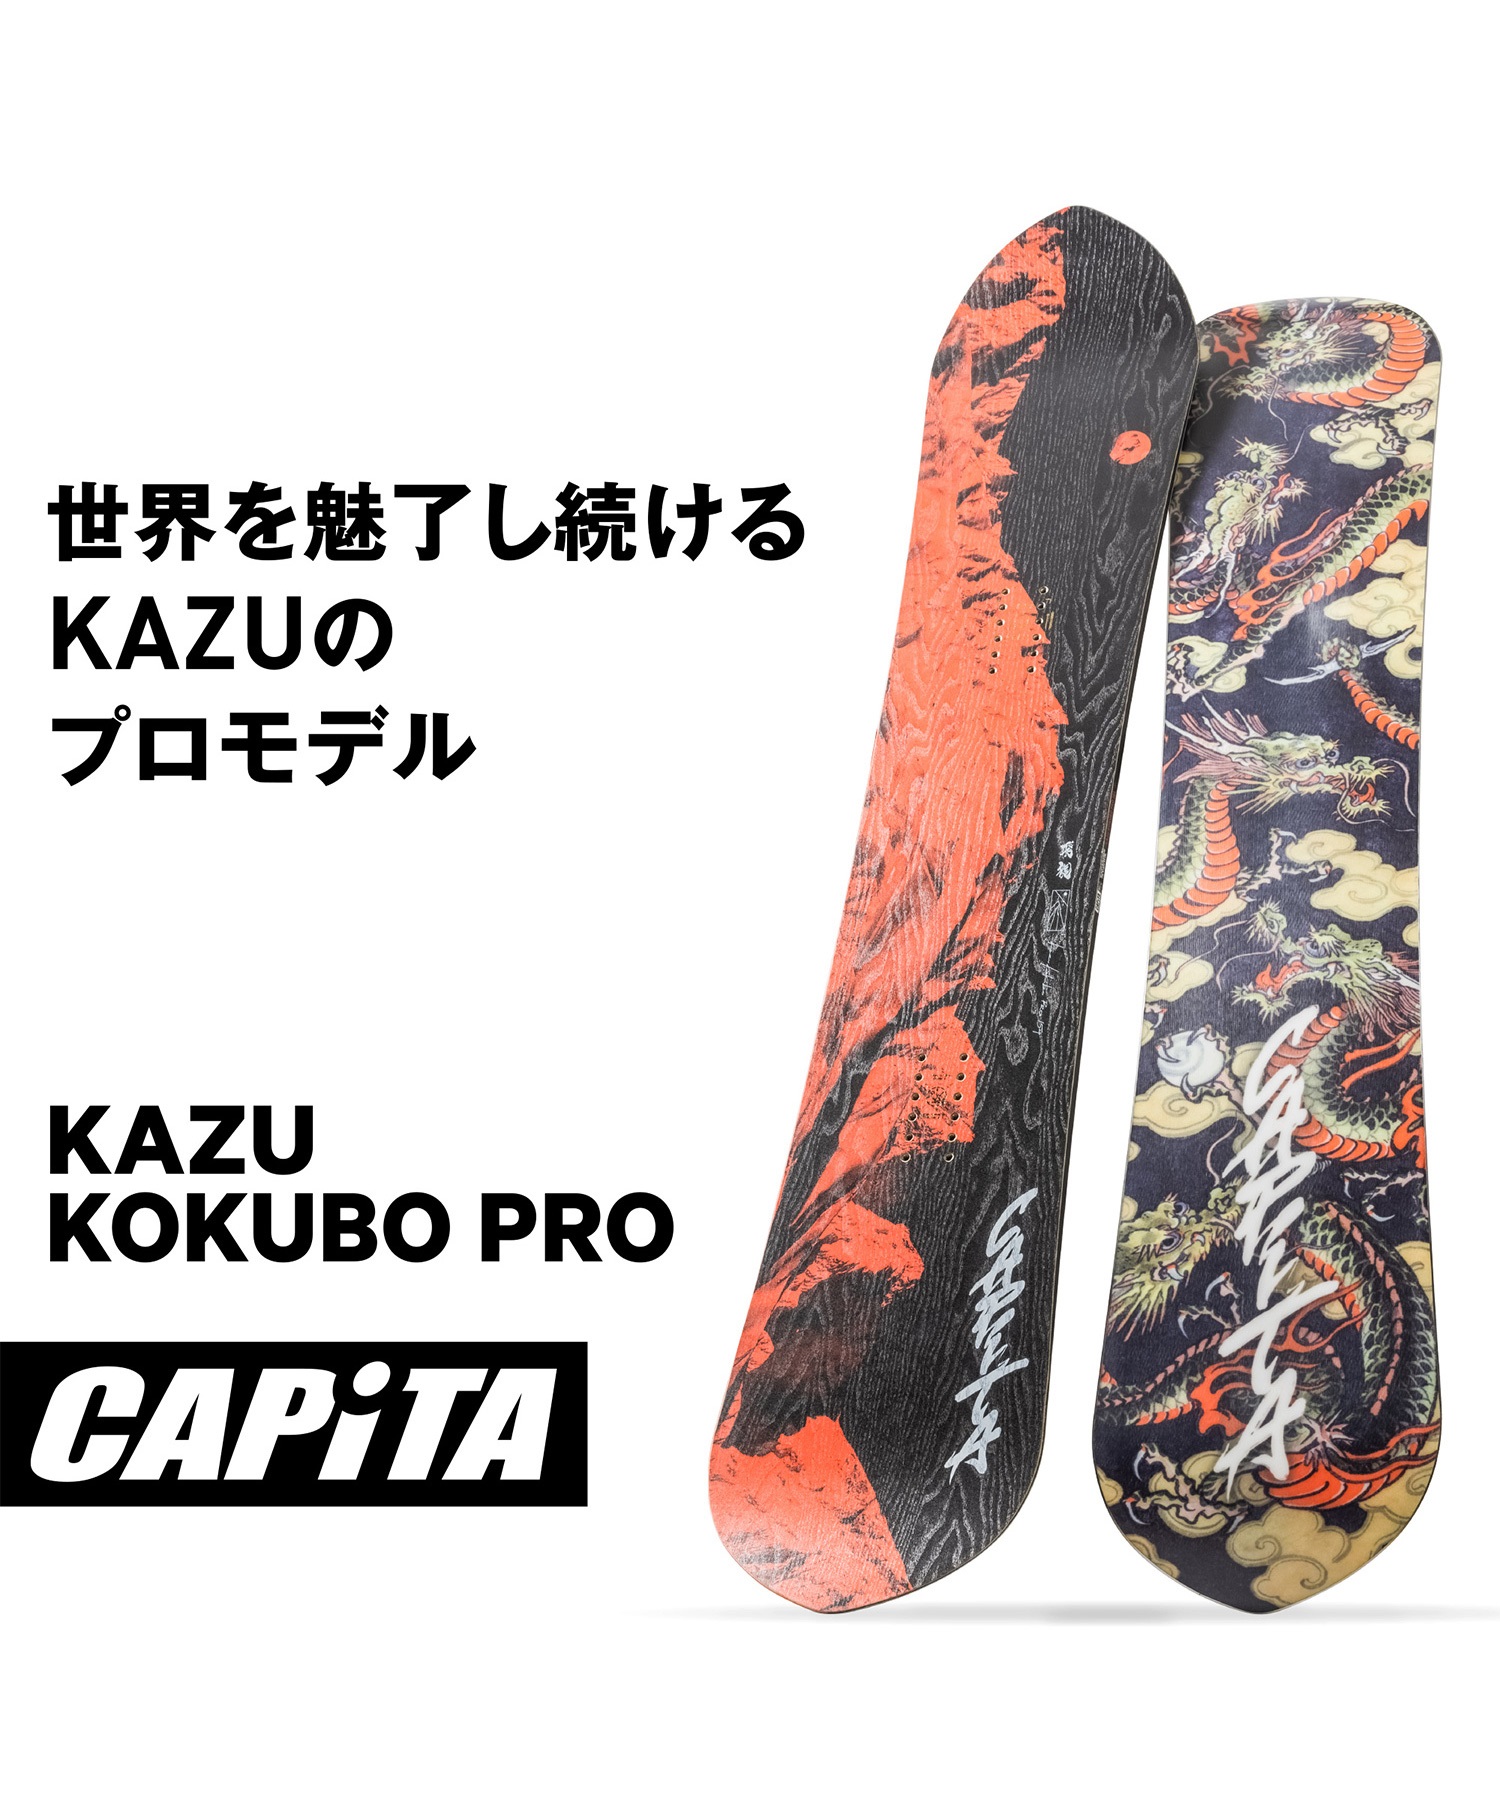 タイプパウダーキャピタ capita kazu kokubo pro 154